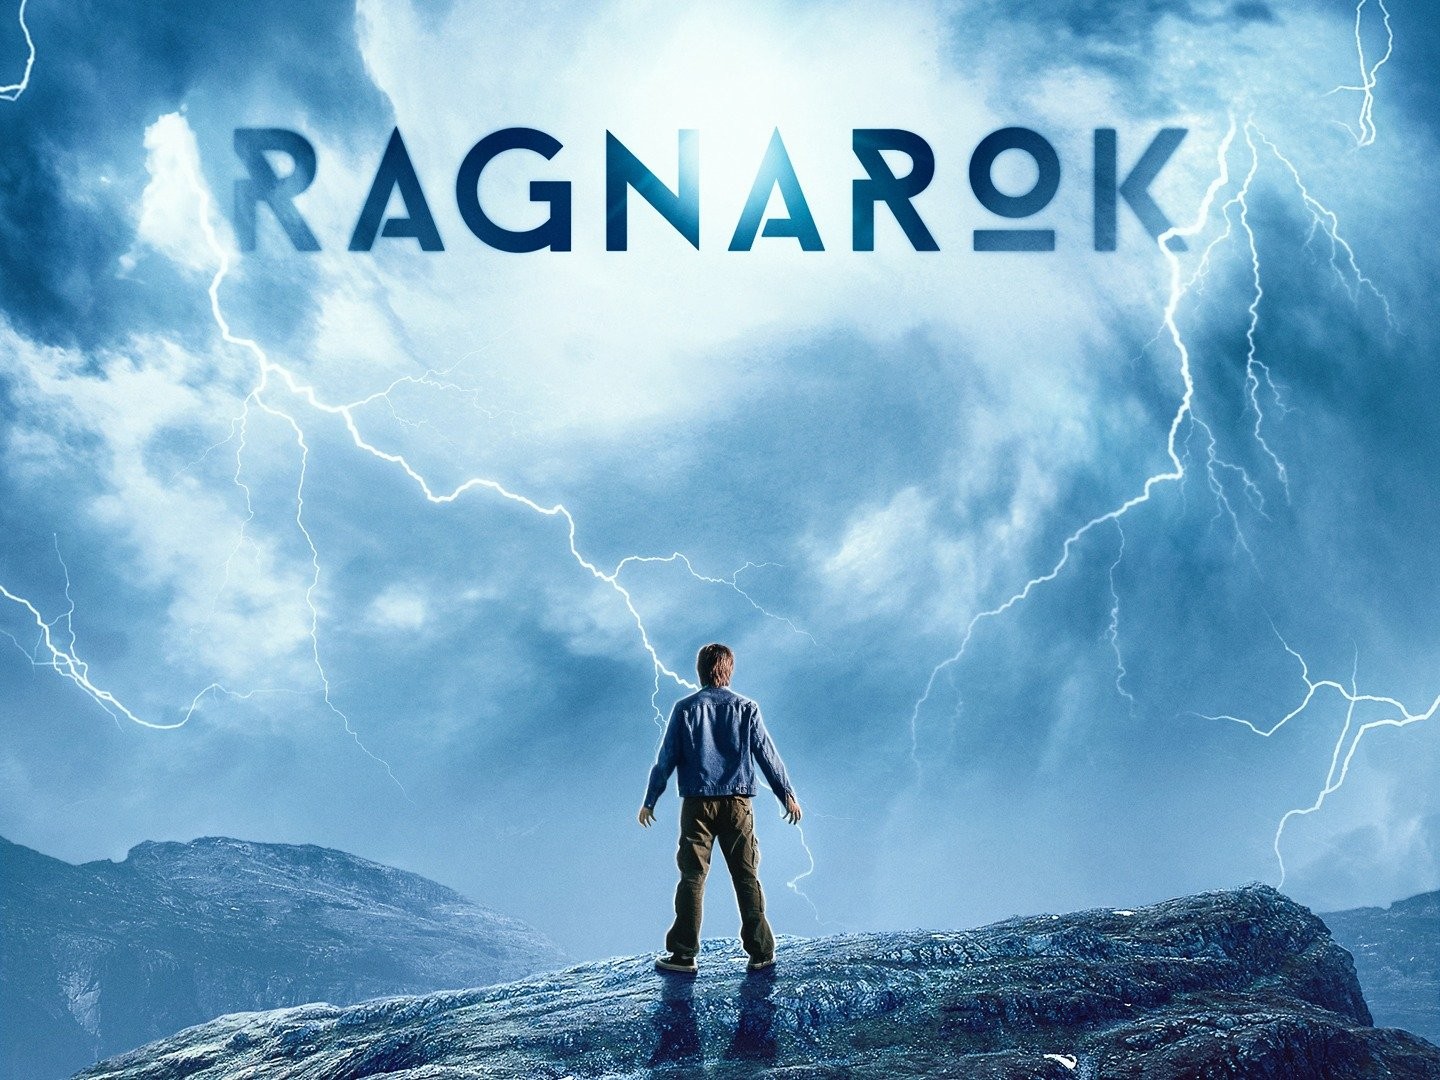 Ragnarok (série de televisão) – Wikipédia, a enciclopédia livre